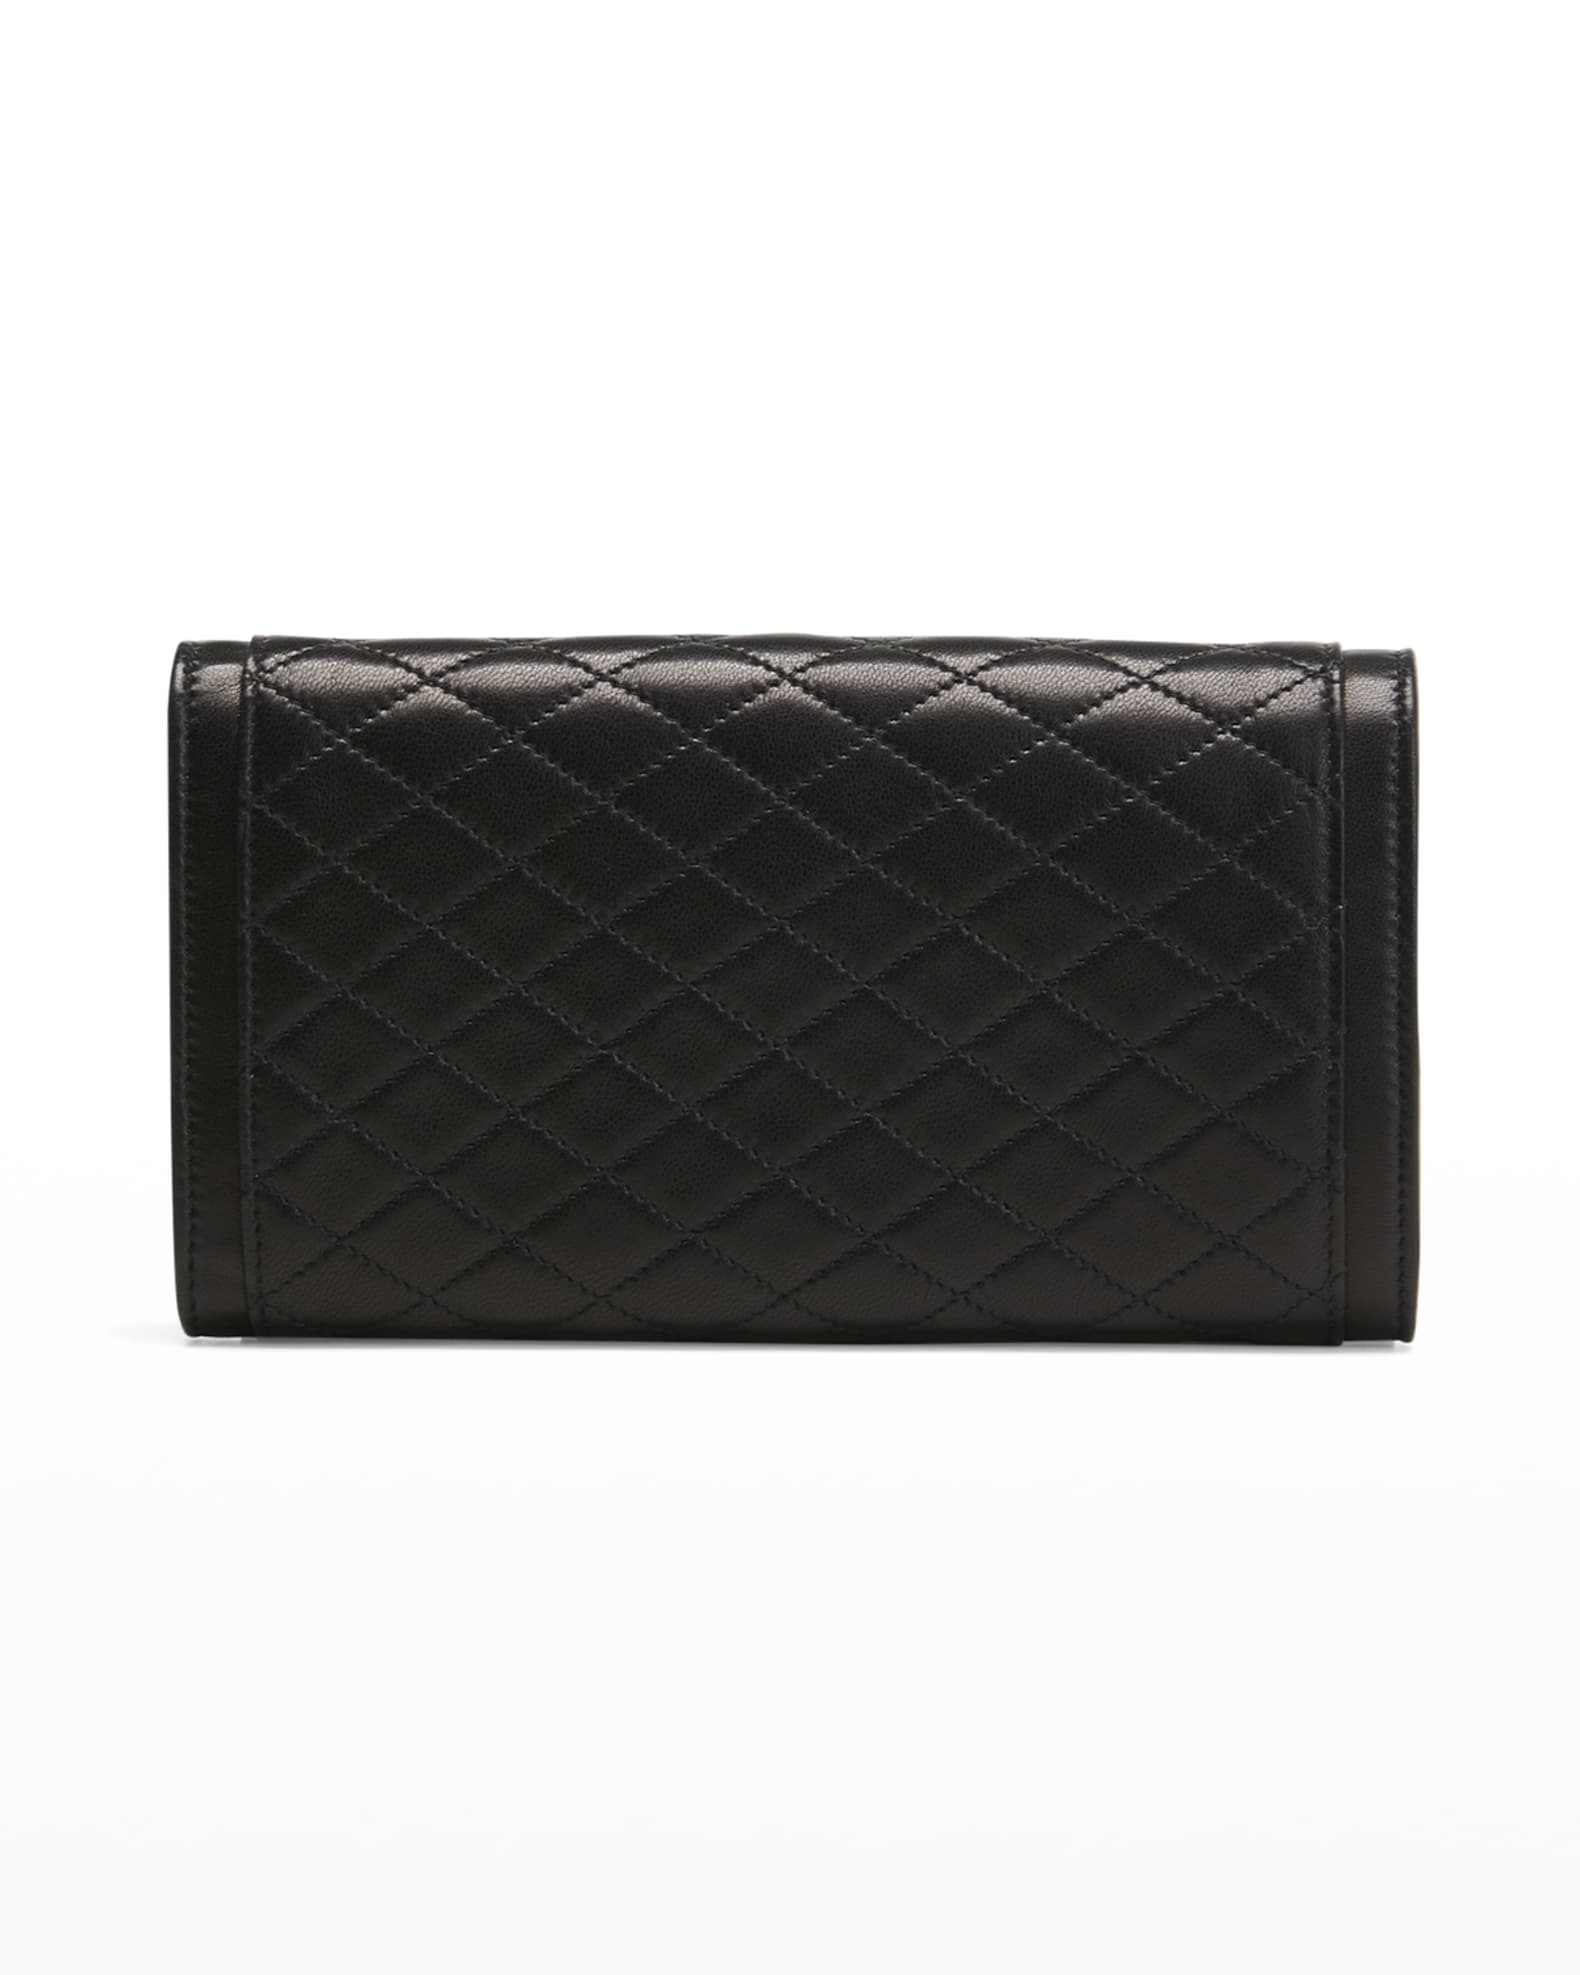 Saint Laurent Gaby Large Flap Quilt Lambskin Wallet | Neiman Marcus